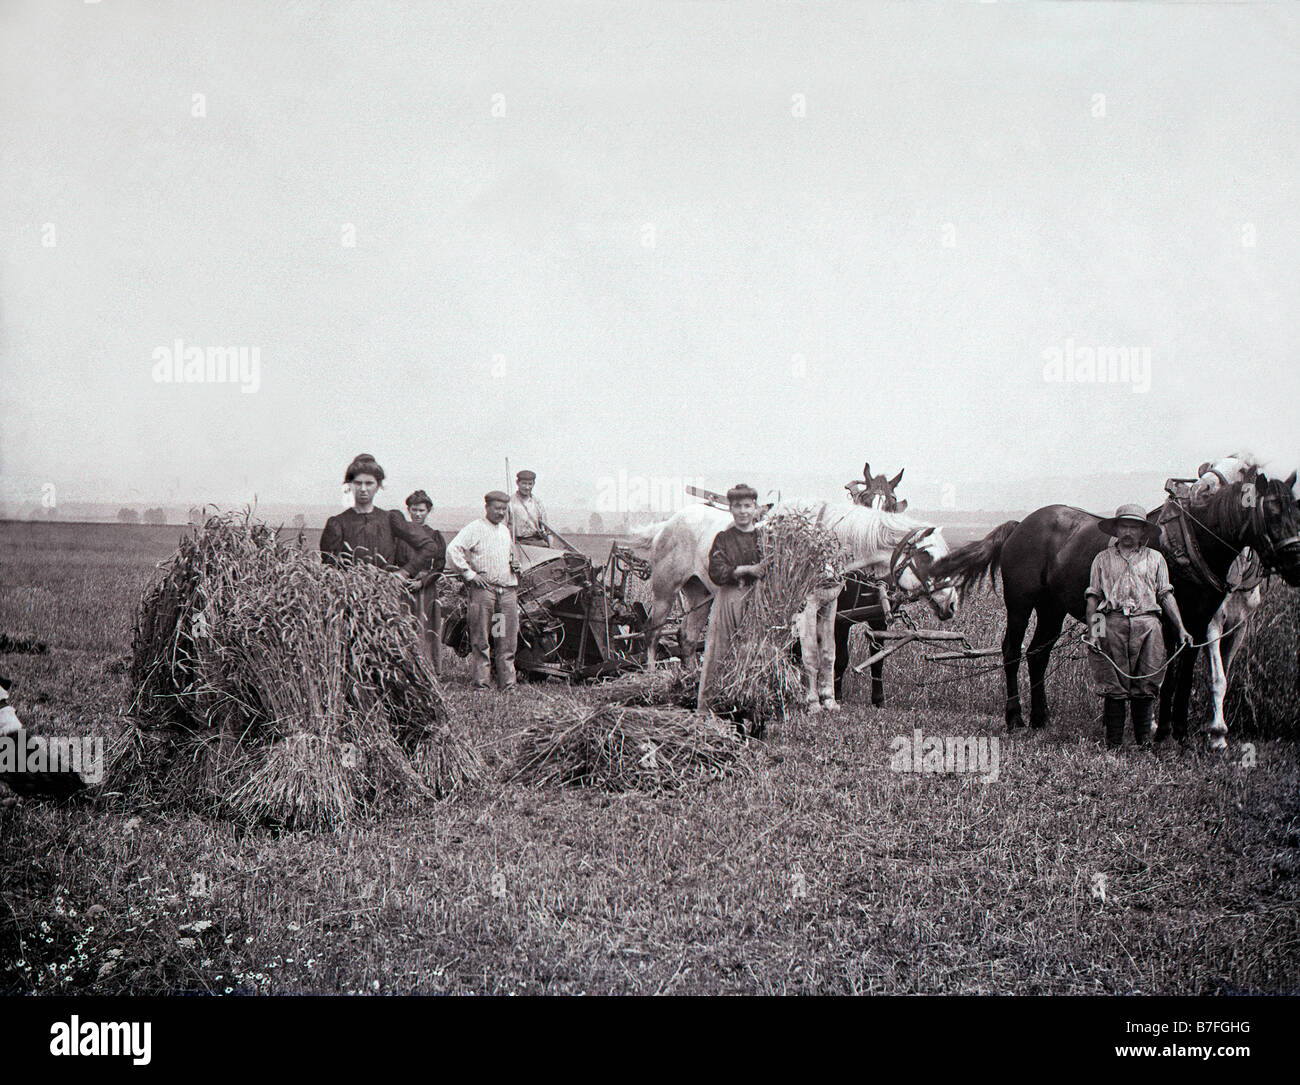 Les foins en France vers 1900 Batteuse batteuse machines agricoles Agriculture agriculture travailleurs travail rural grain haystack Banque D'Images